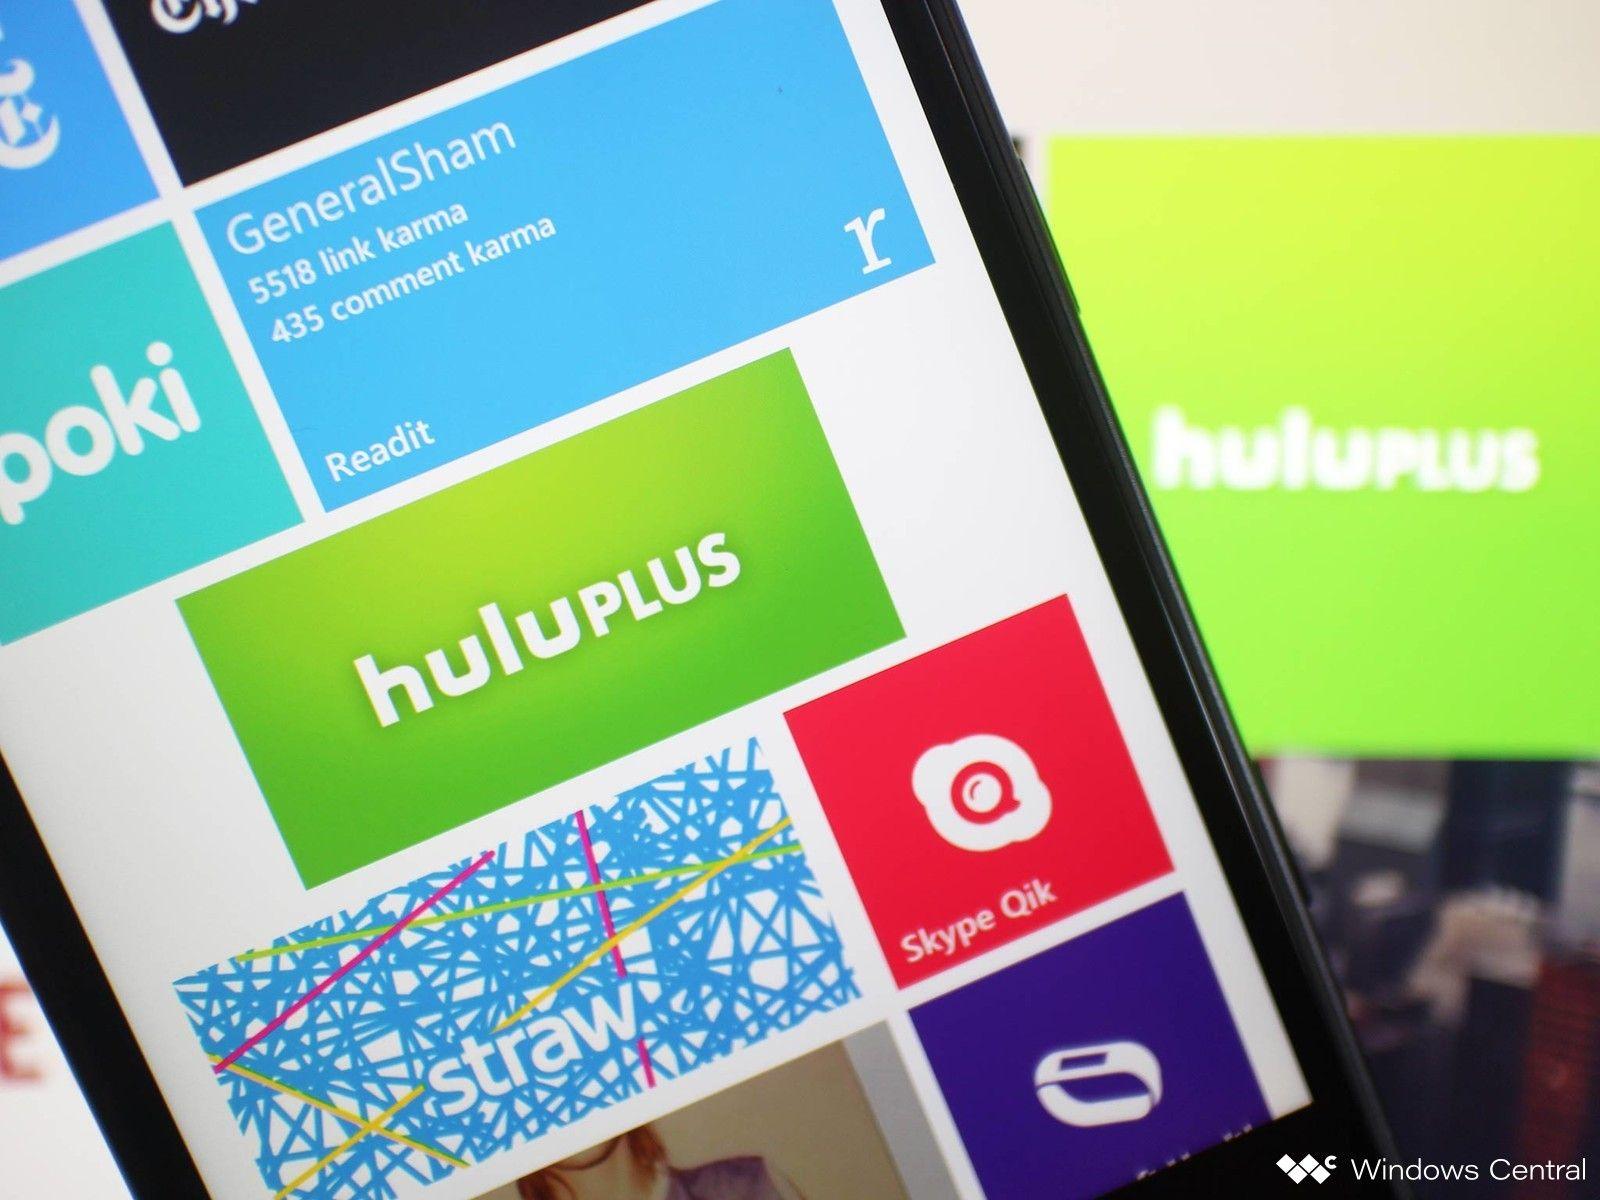 Hulu Plus App Logo - Hulu Plus gets rare Windows Phone update, adds voice search to app ...